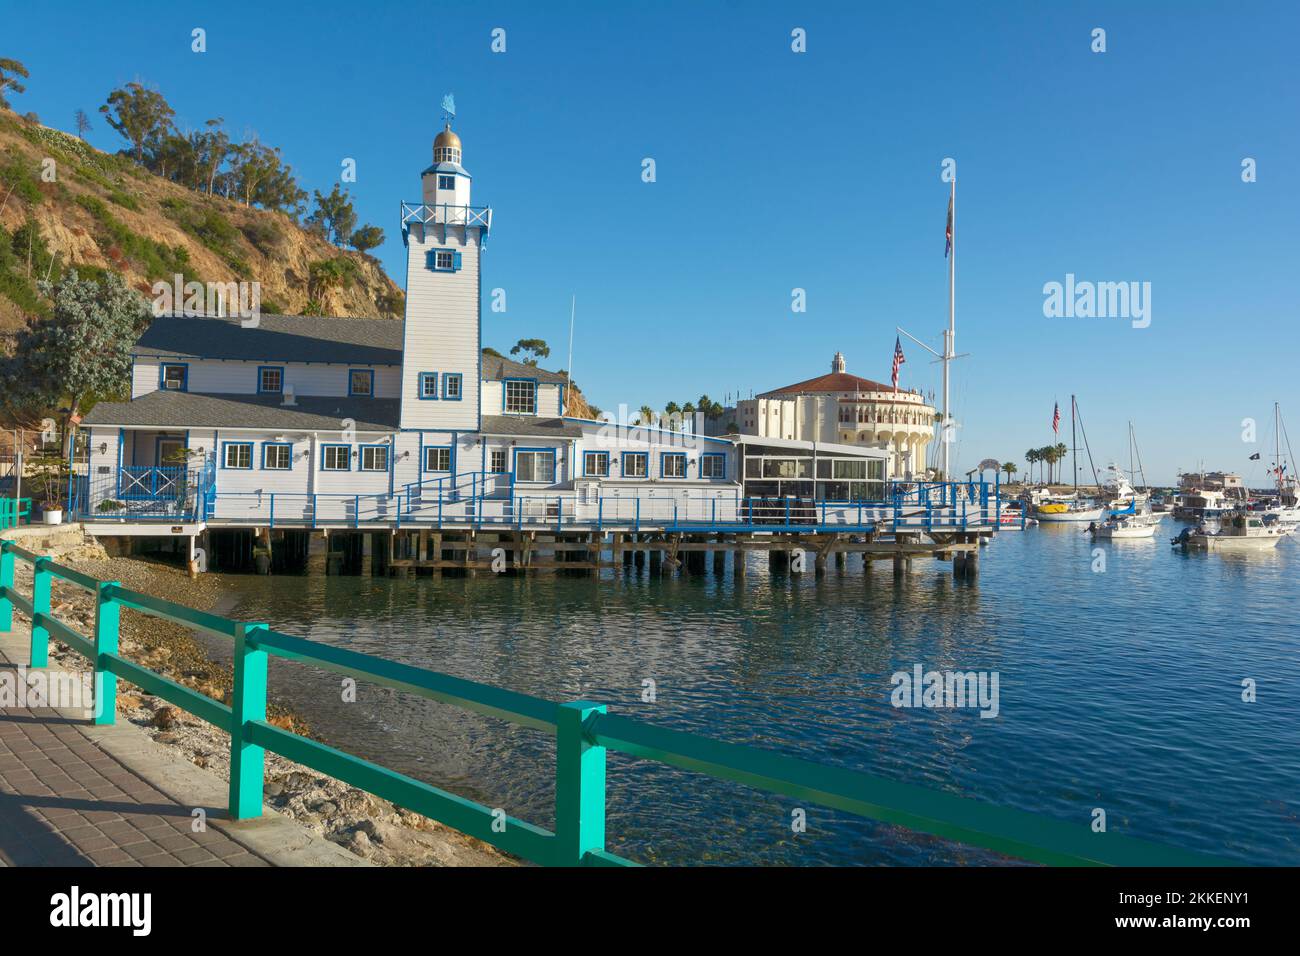 California, Catalina Island, Via Casino, Avalon Harbor, Catalina Island Yacht Club founded 1924, Casino (R) Stock Photo